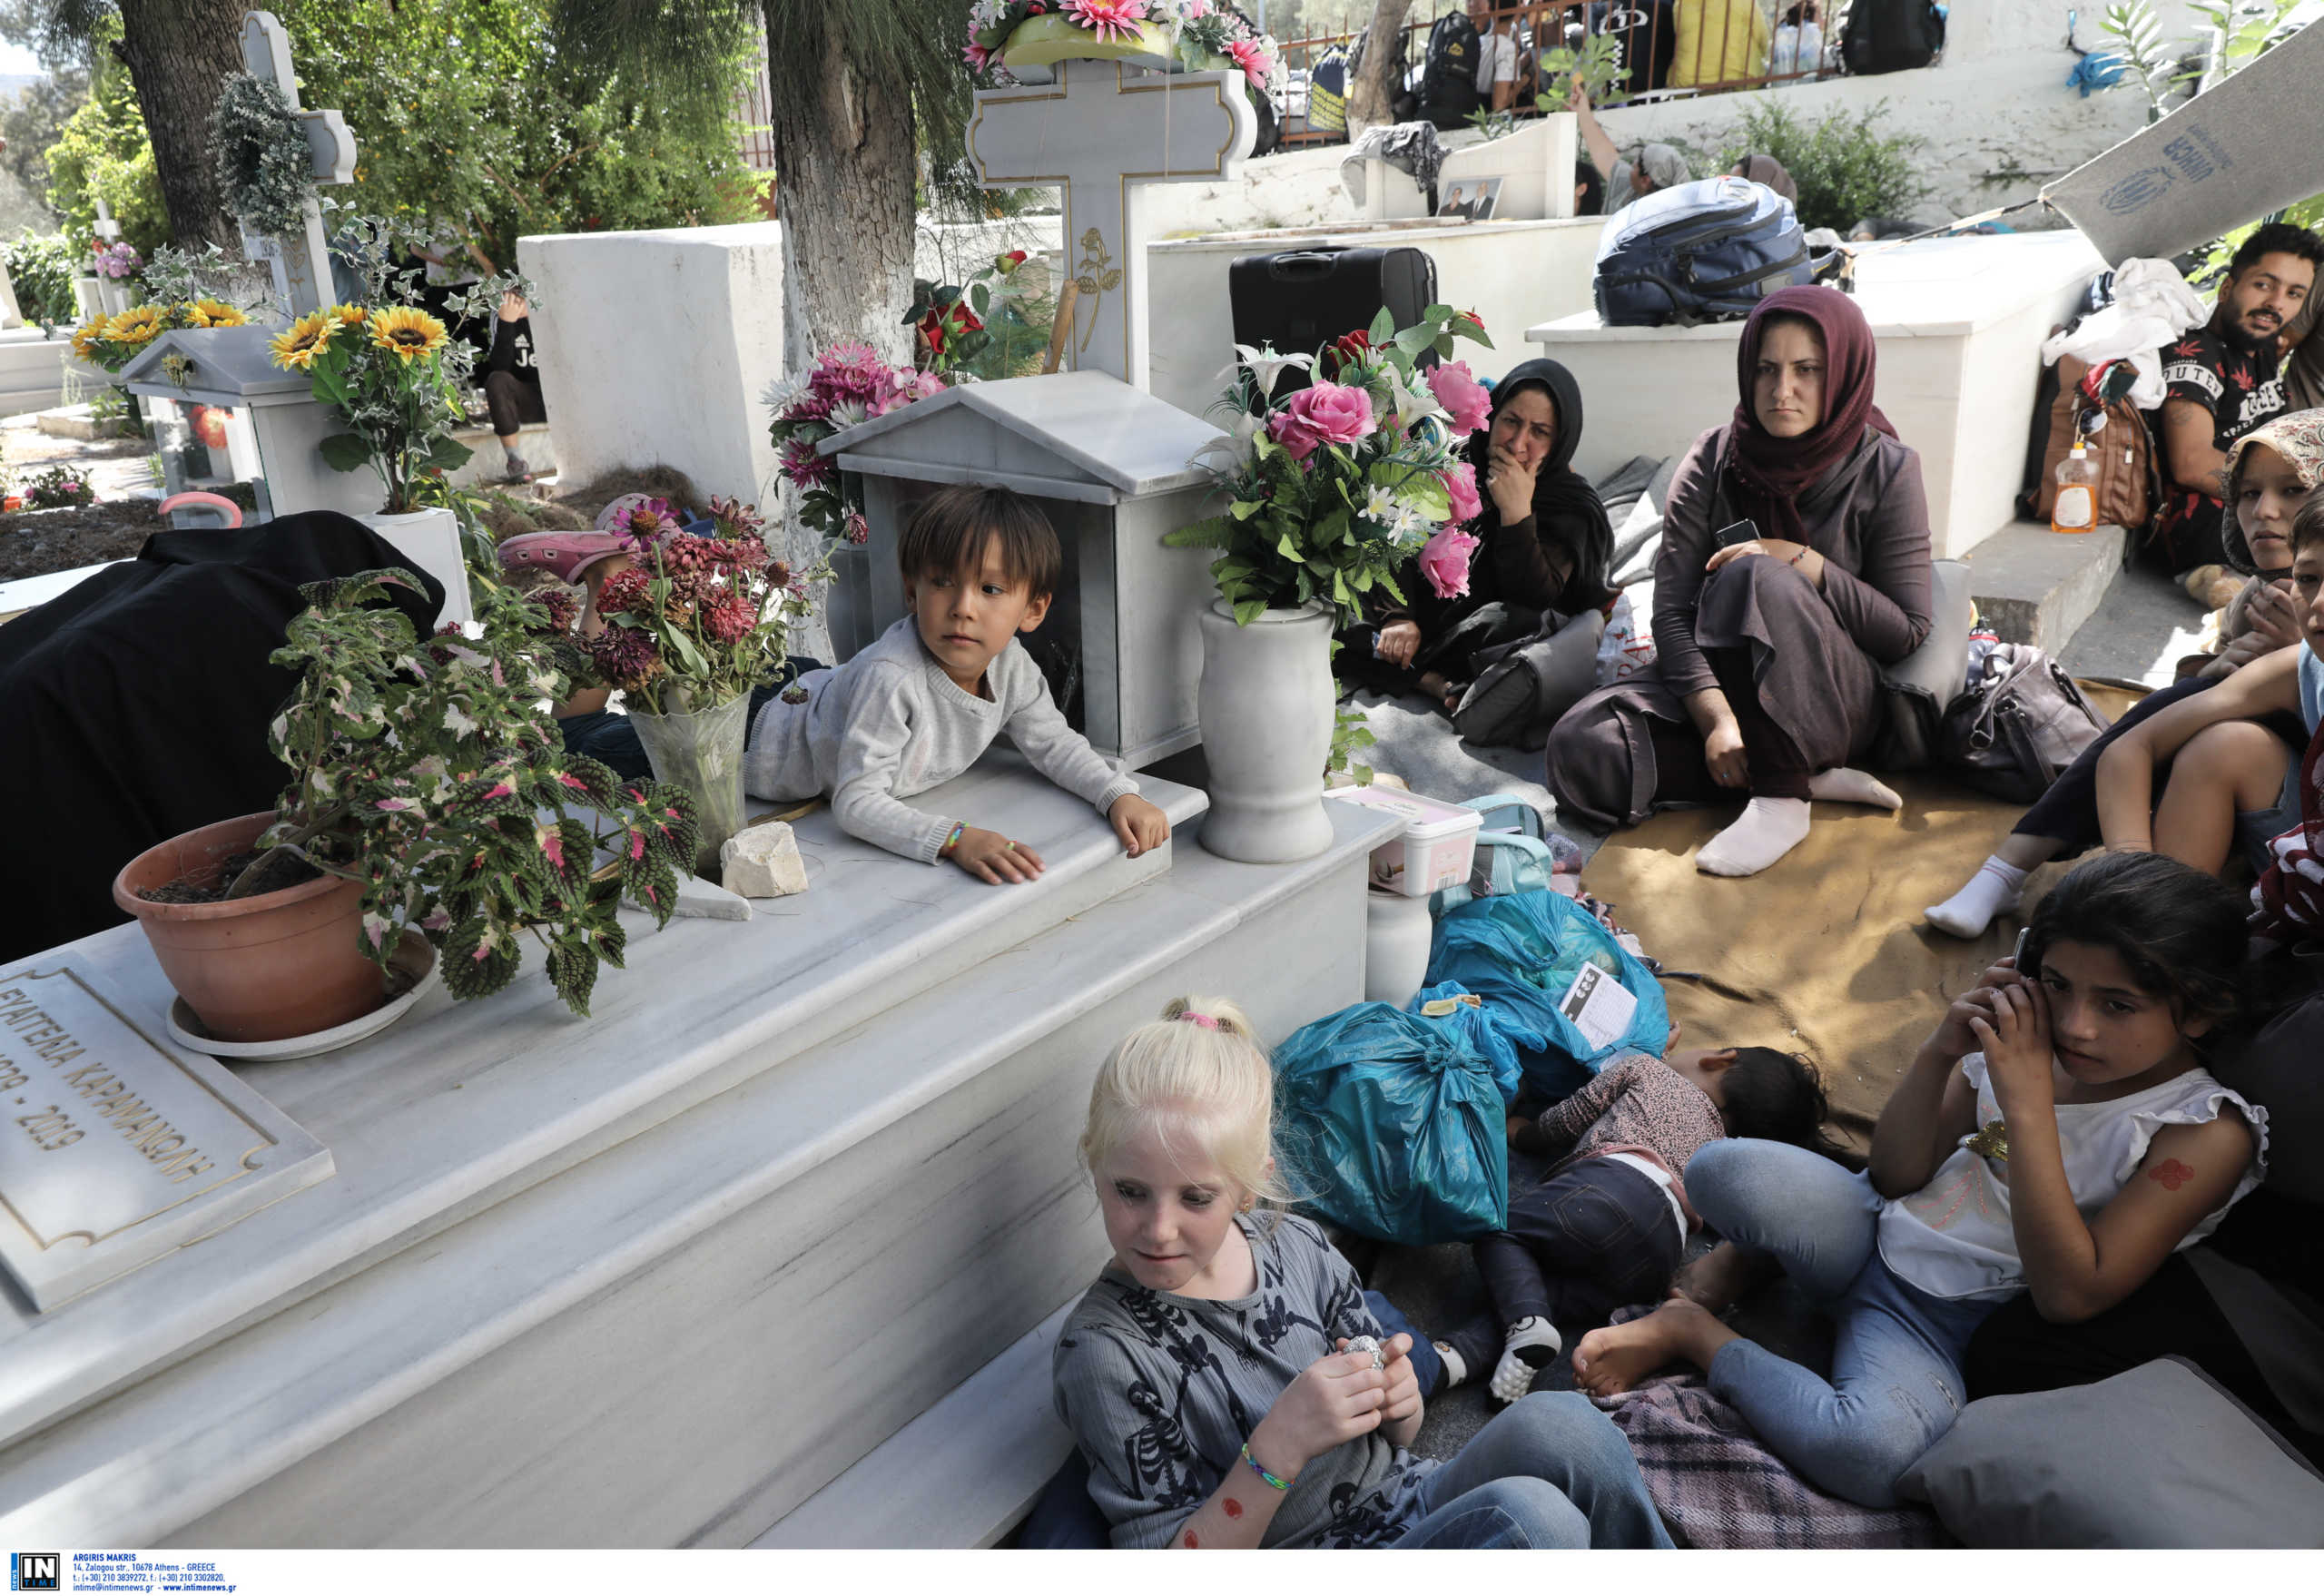 Απελπισία: Εικόνες σοκ από τους ανθρώπους που βρήκαν καταφύγιο σε νεκροταφείο